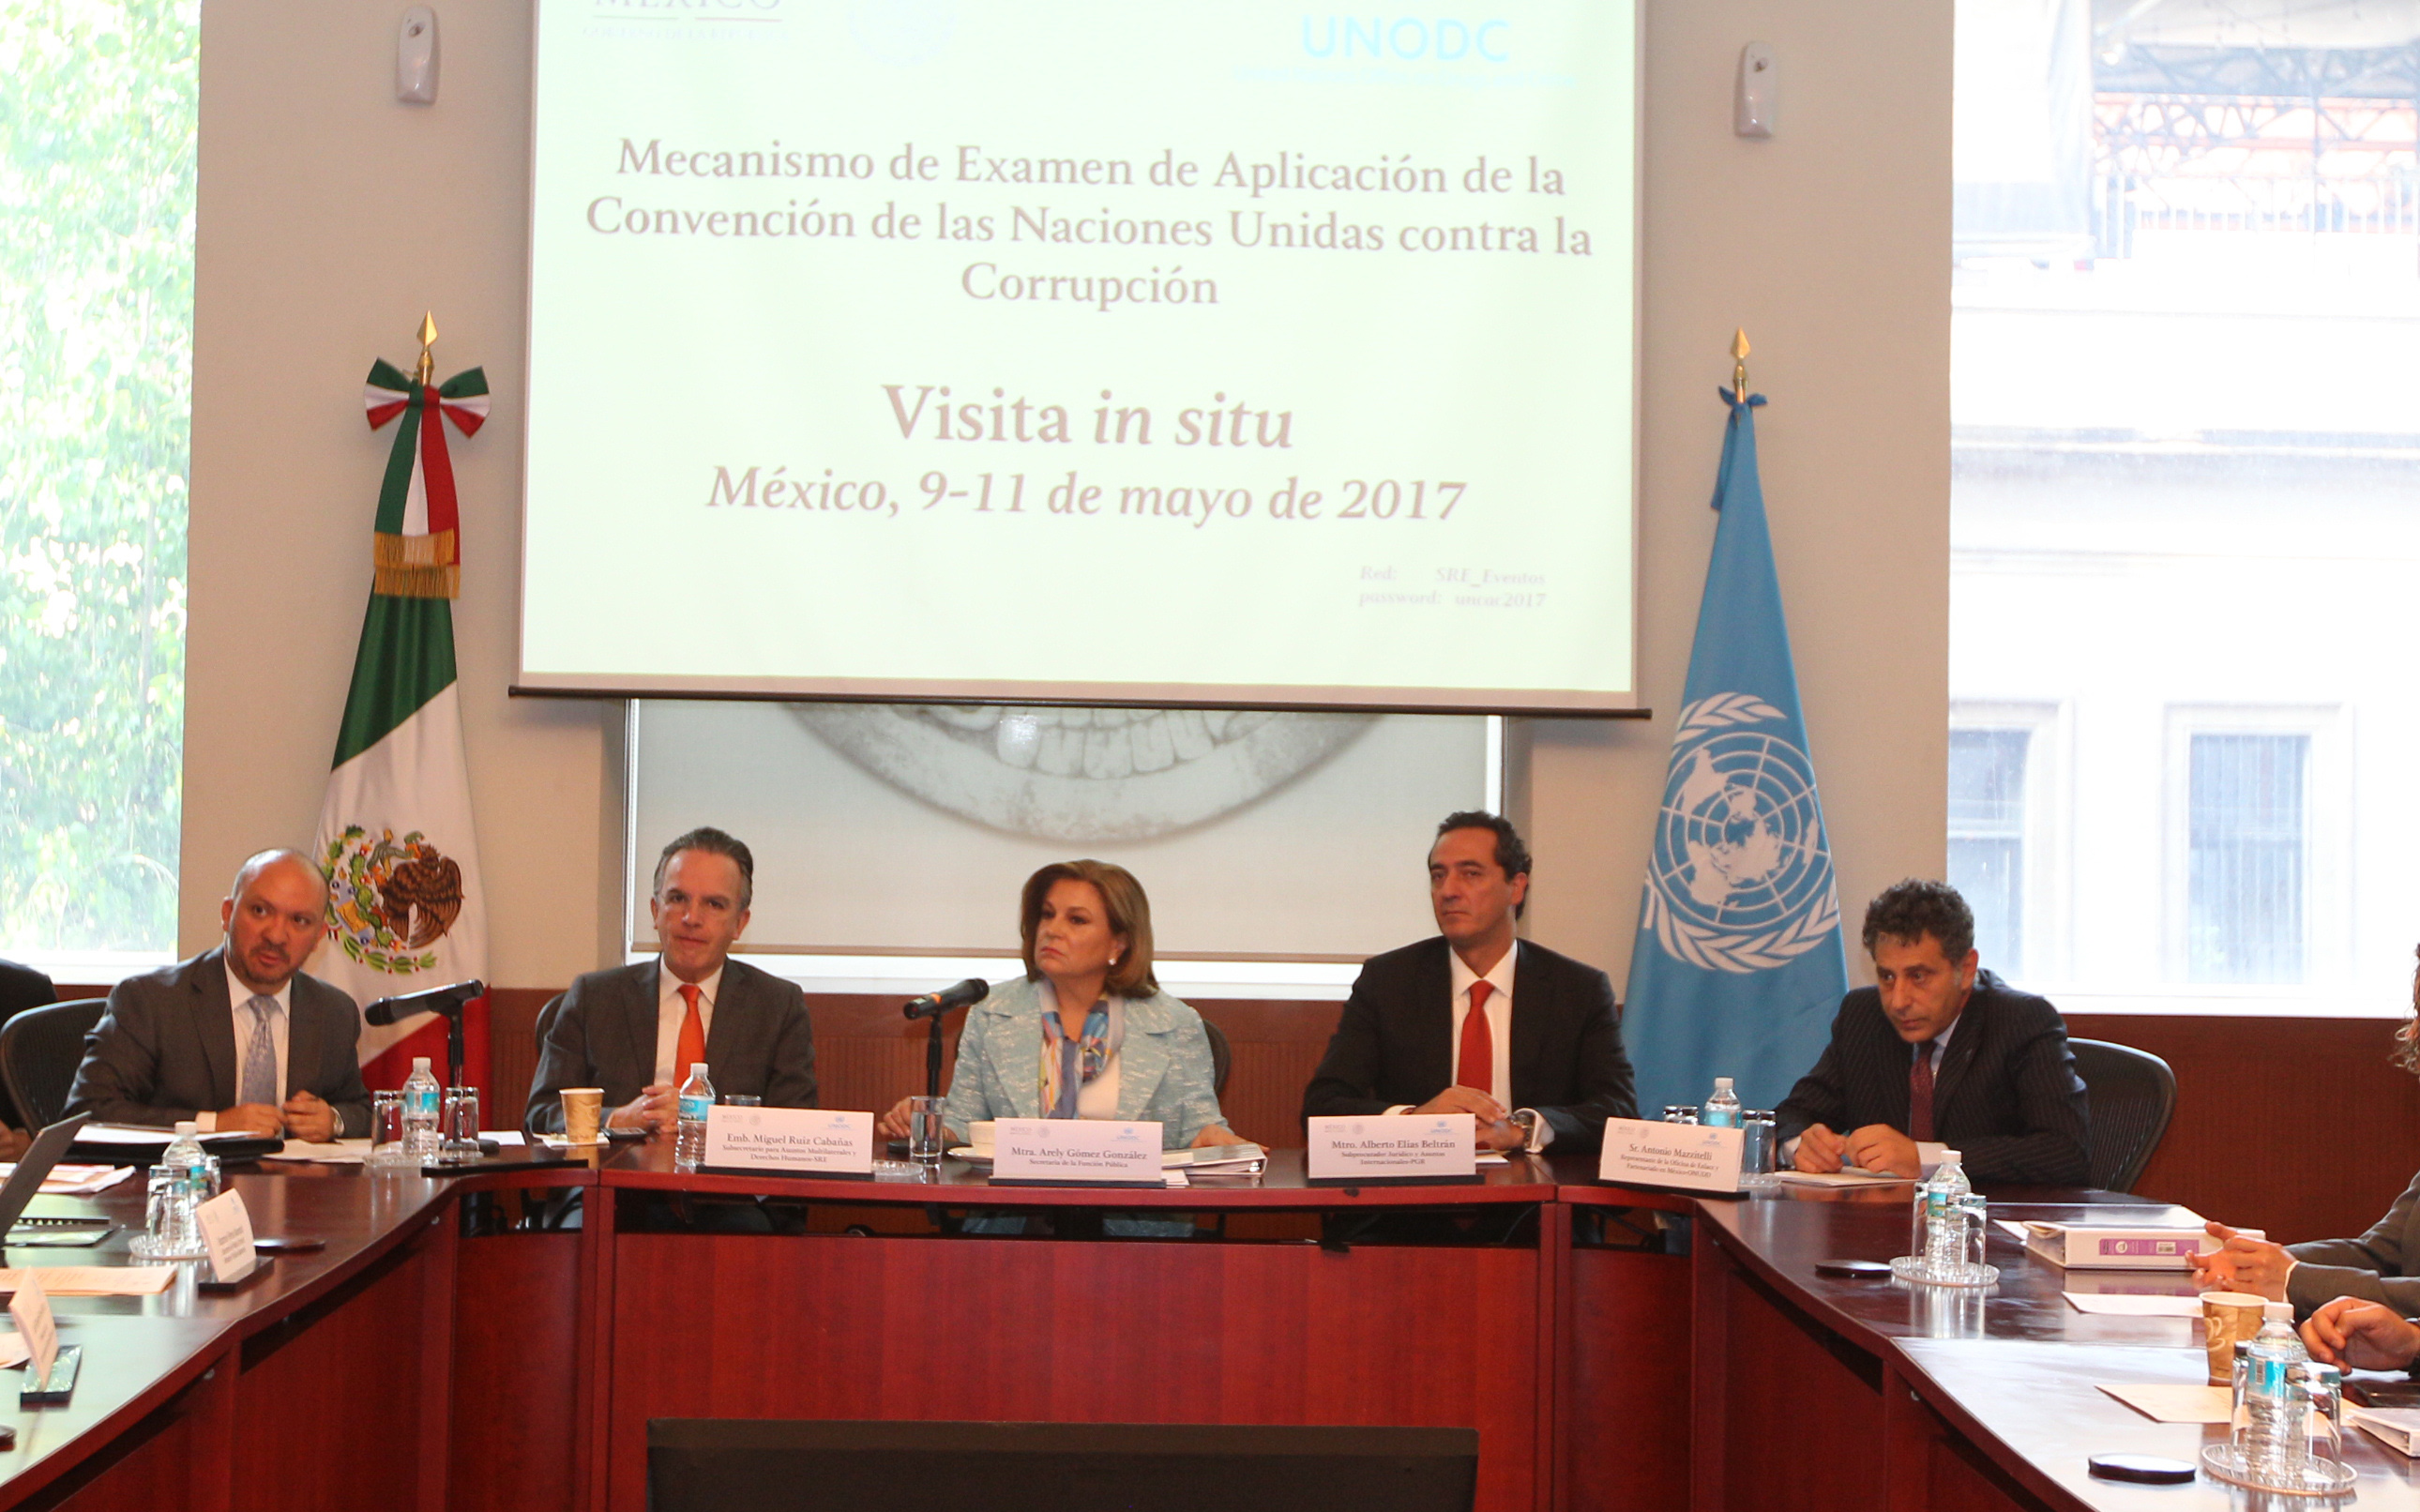 Ceremonia inaugural de la Visita in situ a México, como parte de Mecanismo de Examen de Aplicación de la Convención de las Naciones Unidas contra la Corrupción